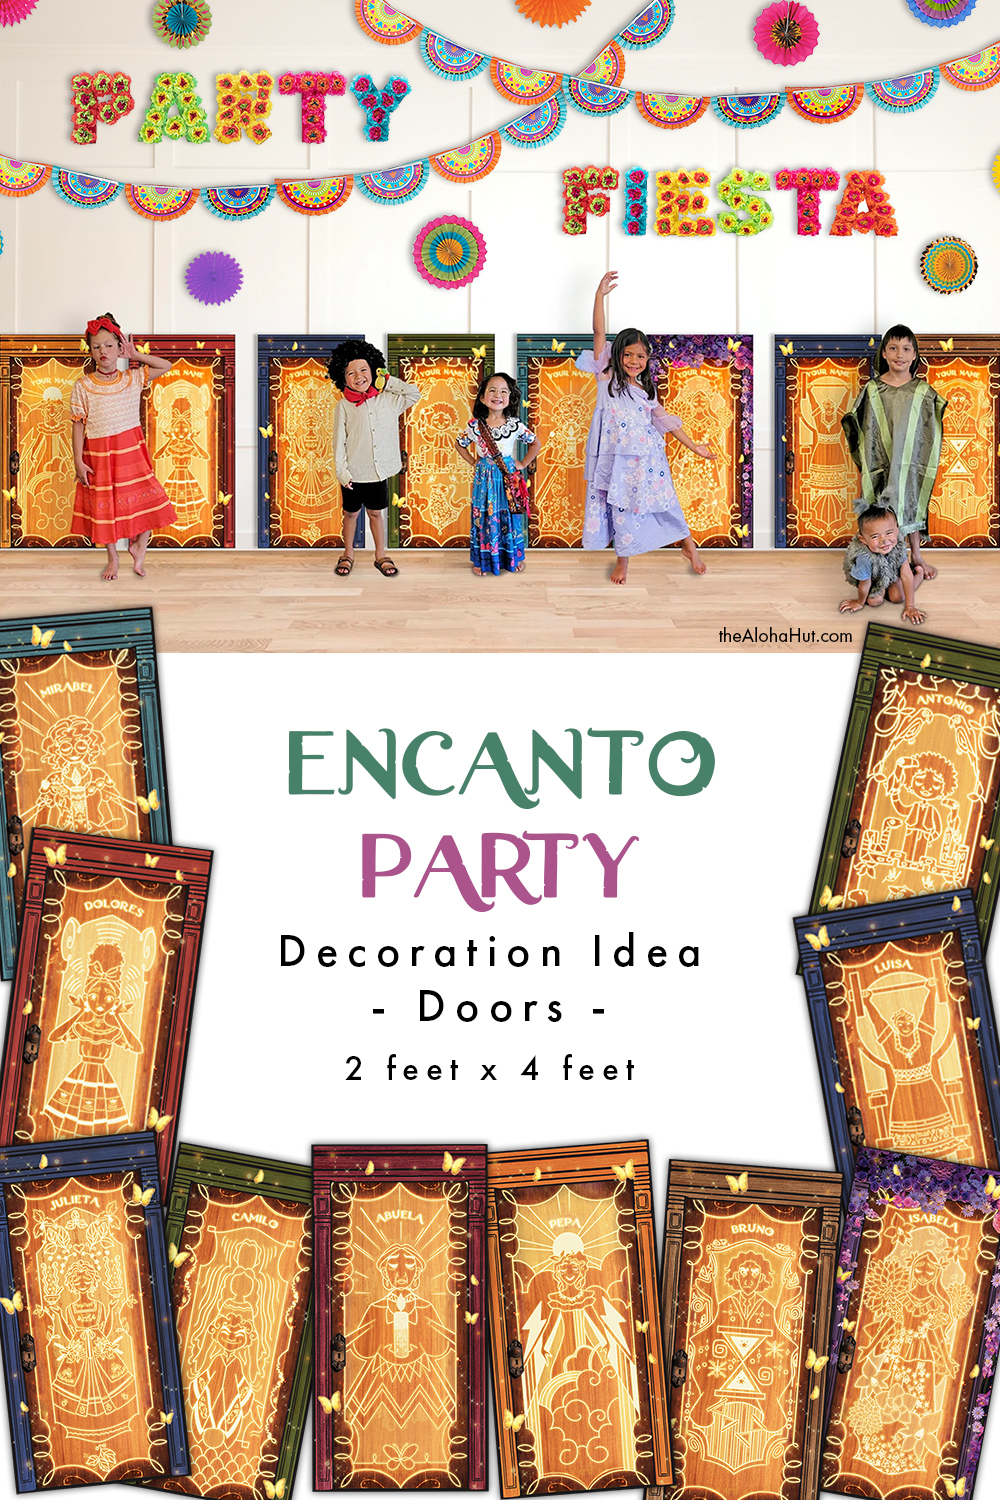 Encanto Party Ideas - Decoration